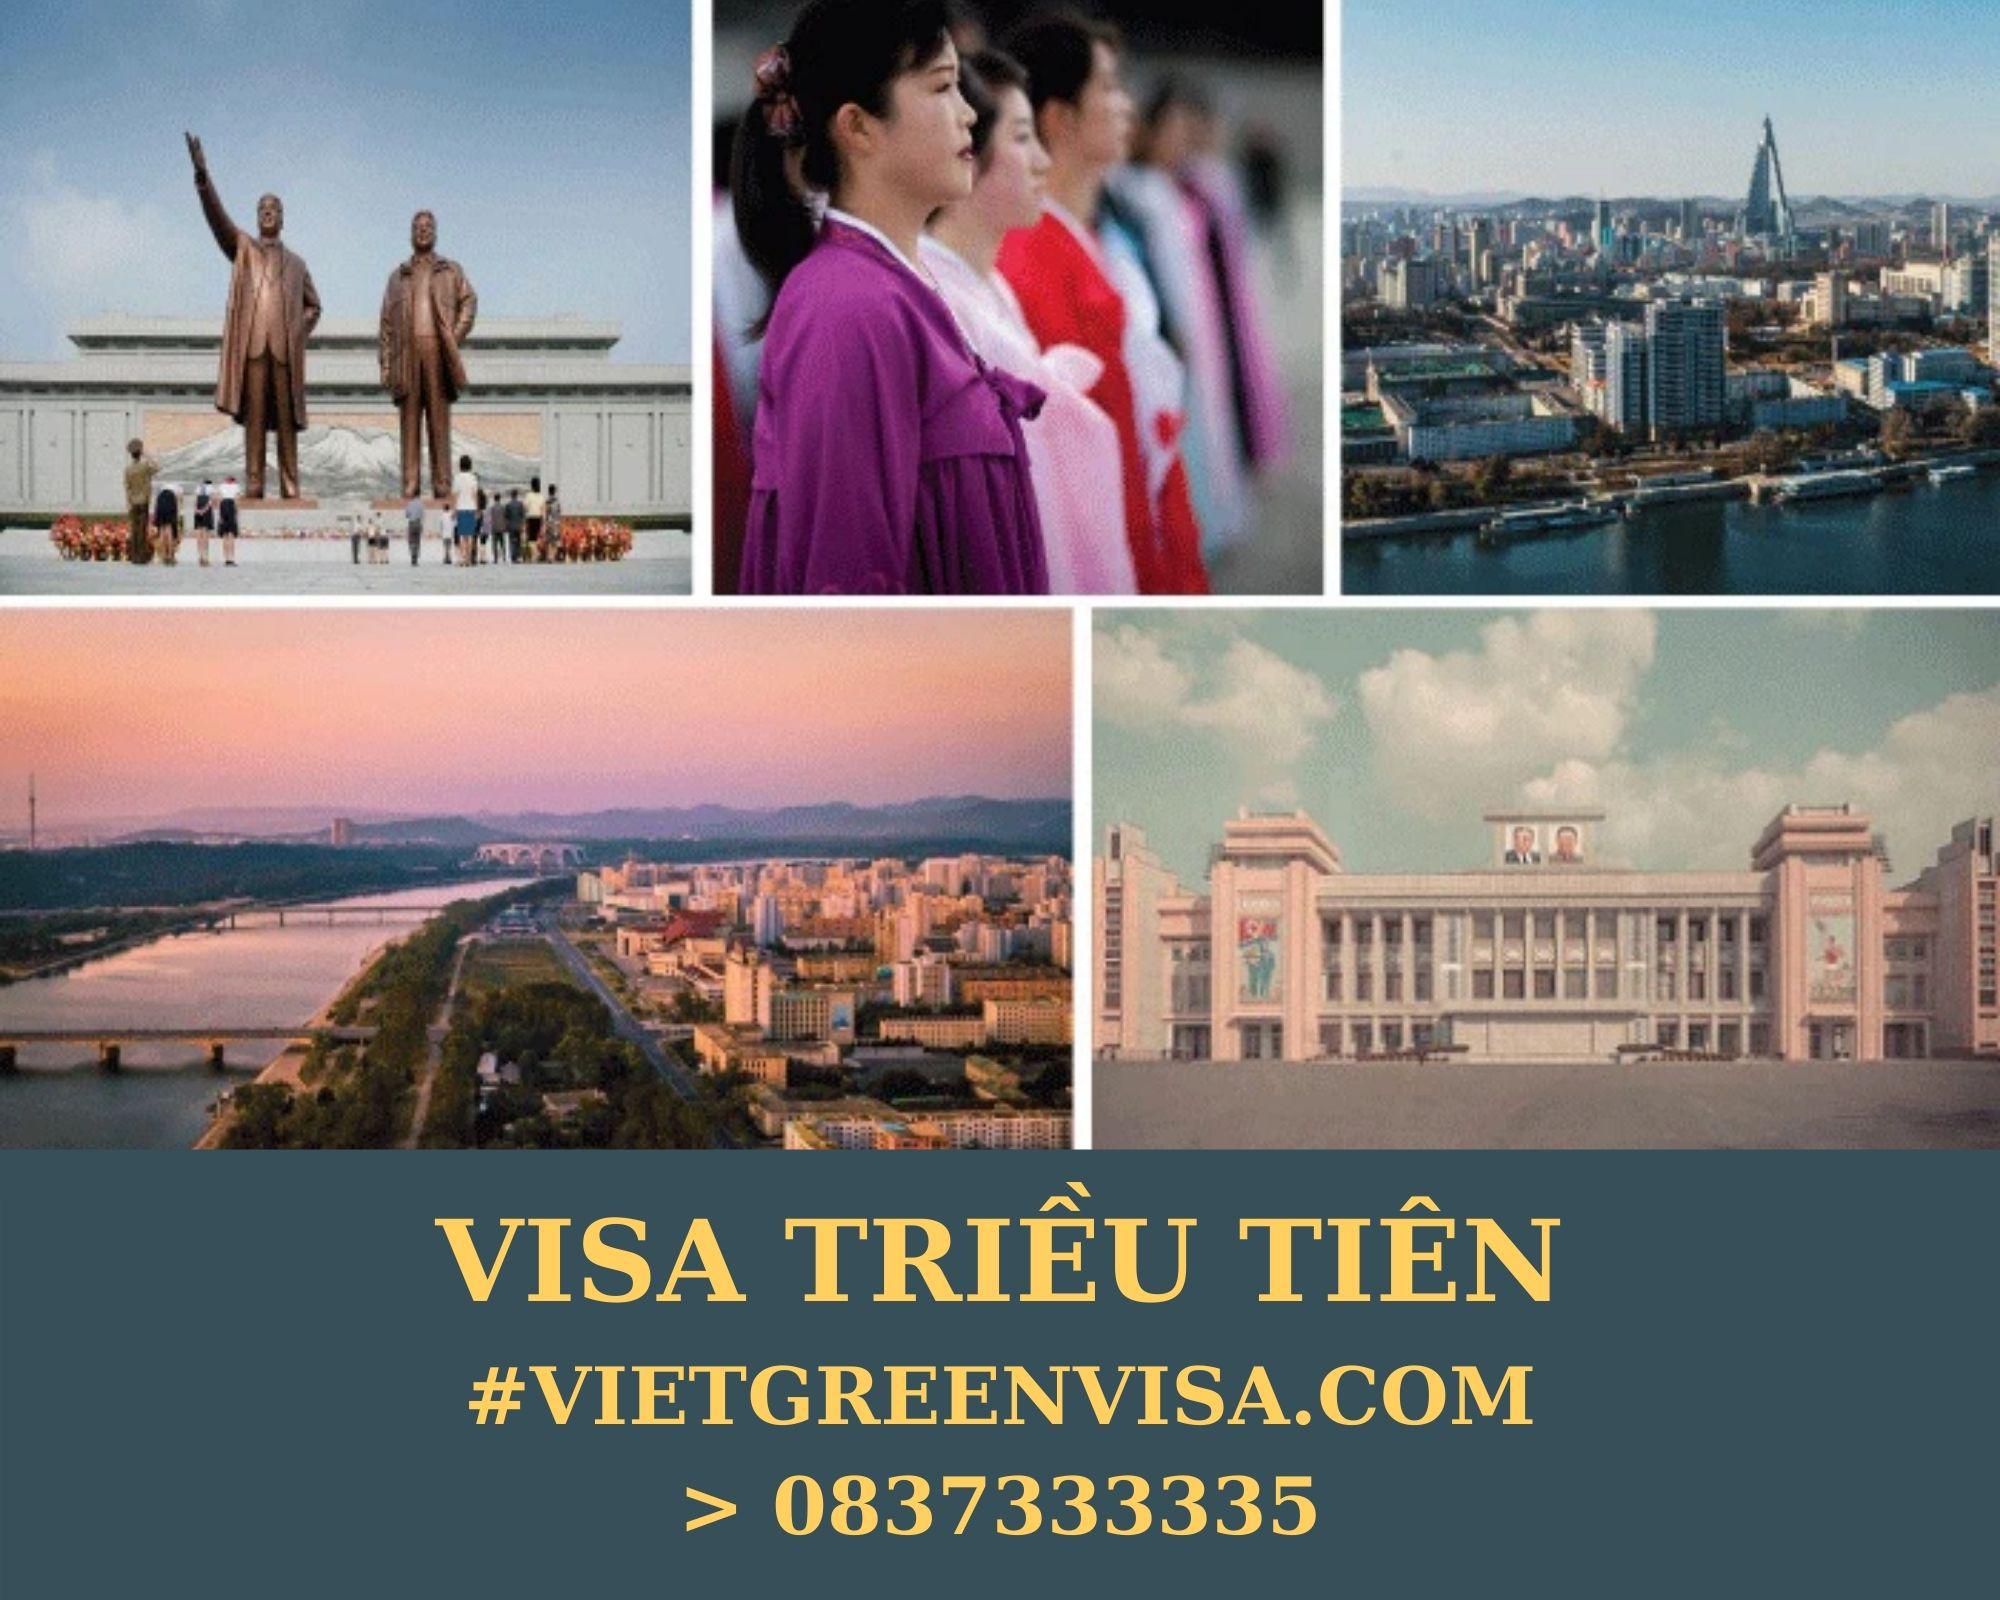 Làm Visa Triều Tiên thăm thân uy tín, nhanh chóng, giá rẻ